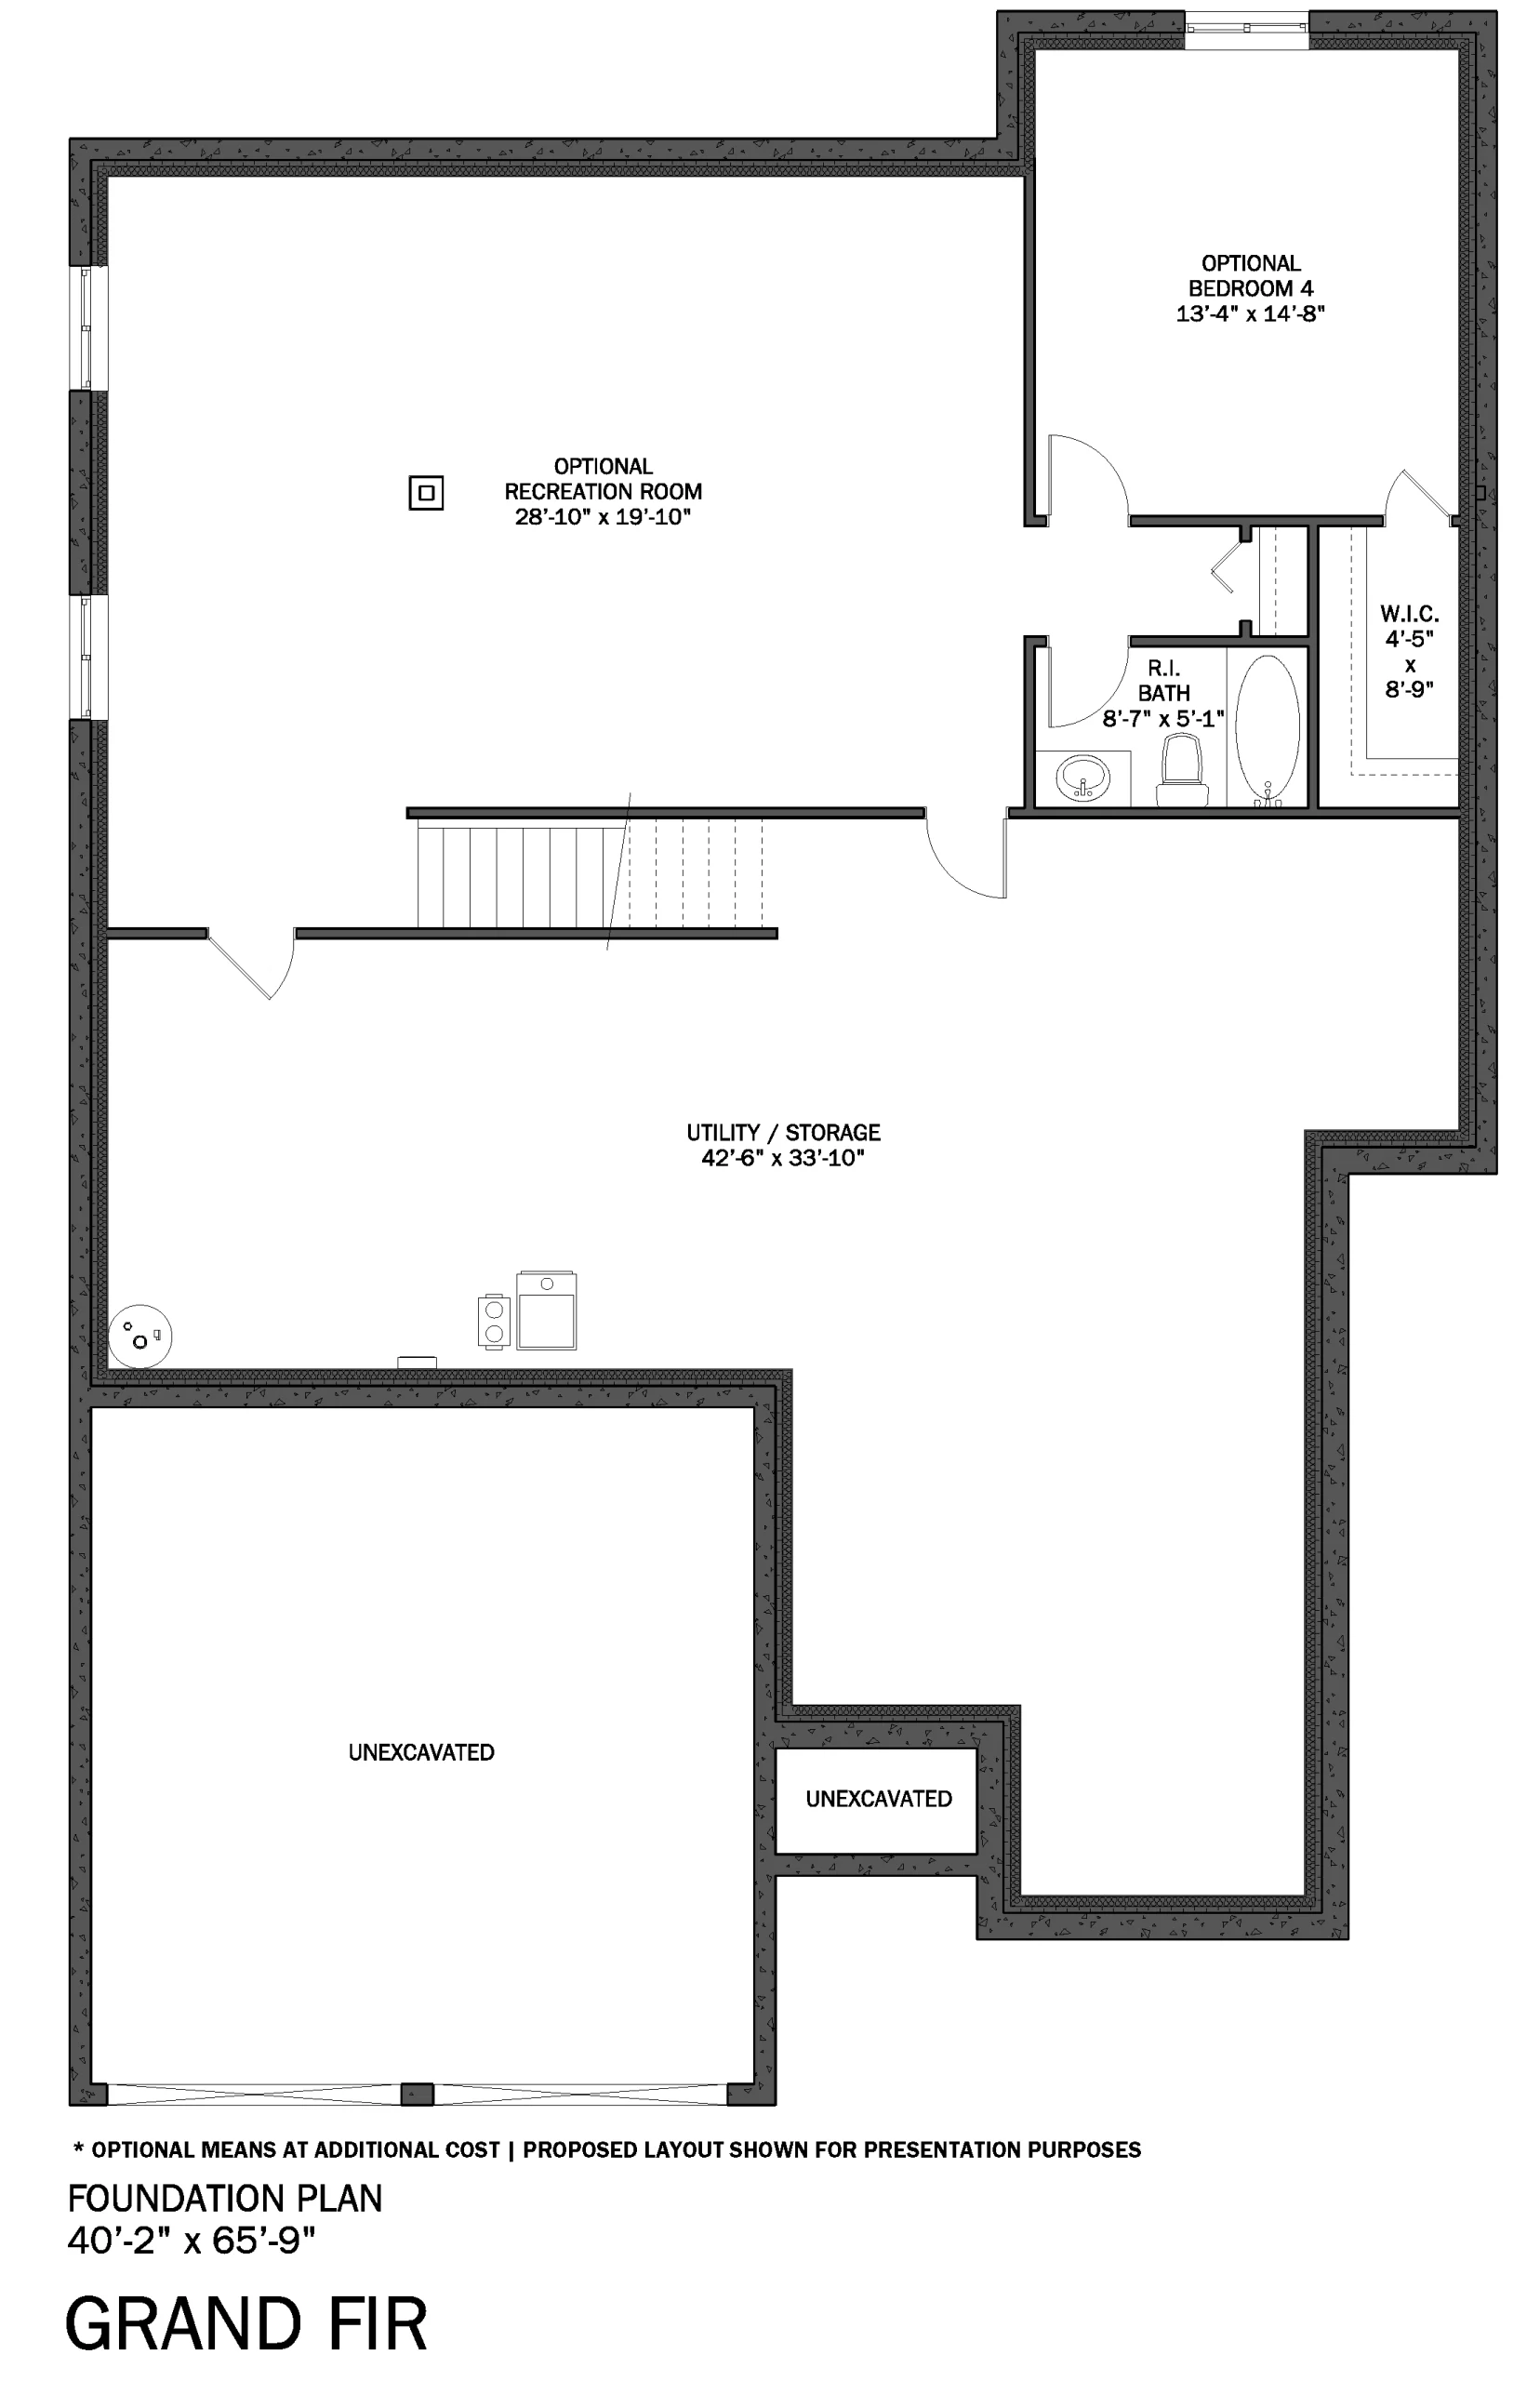 Grand Fir Basement Floor Plan